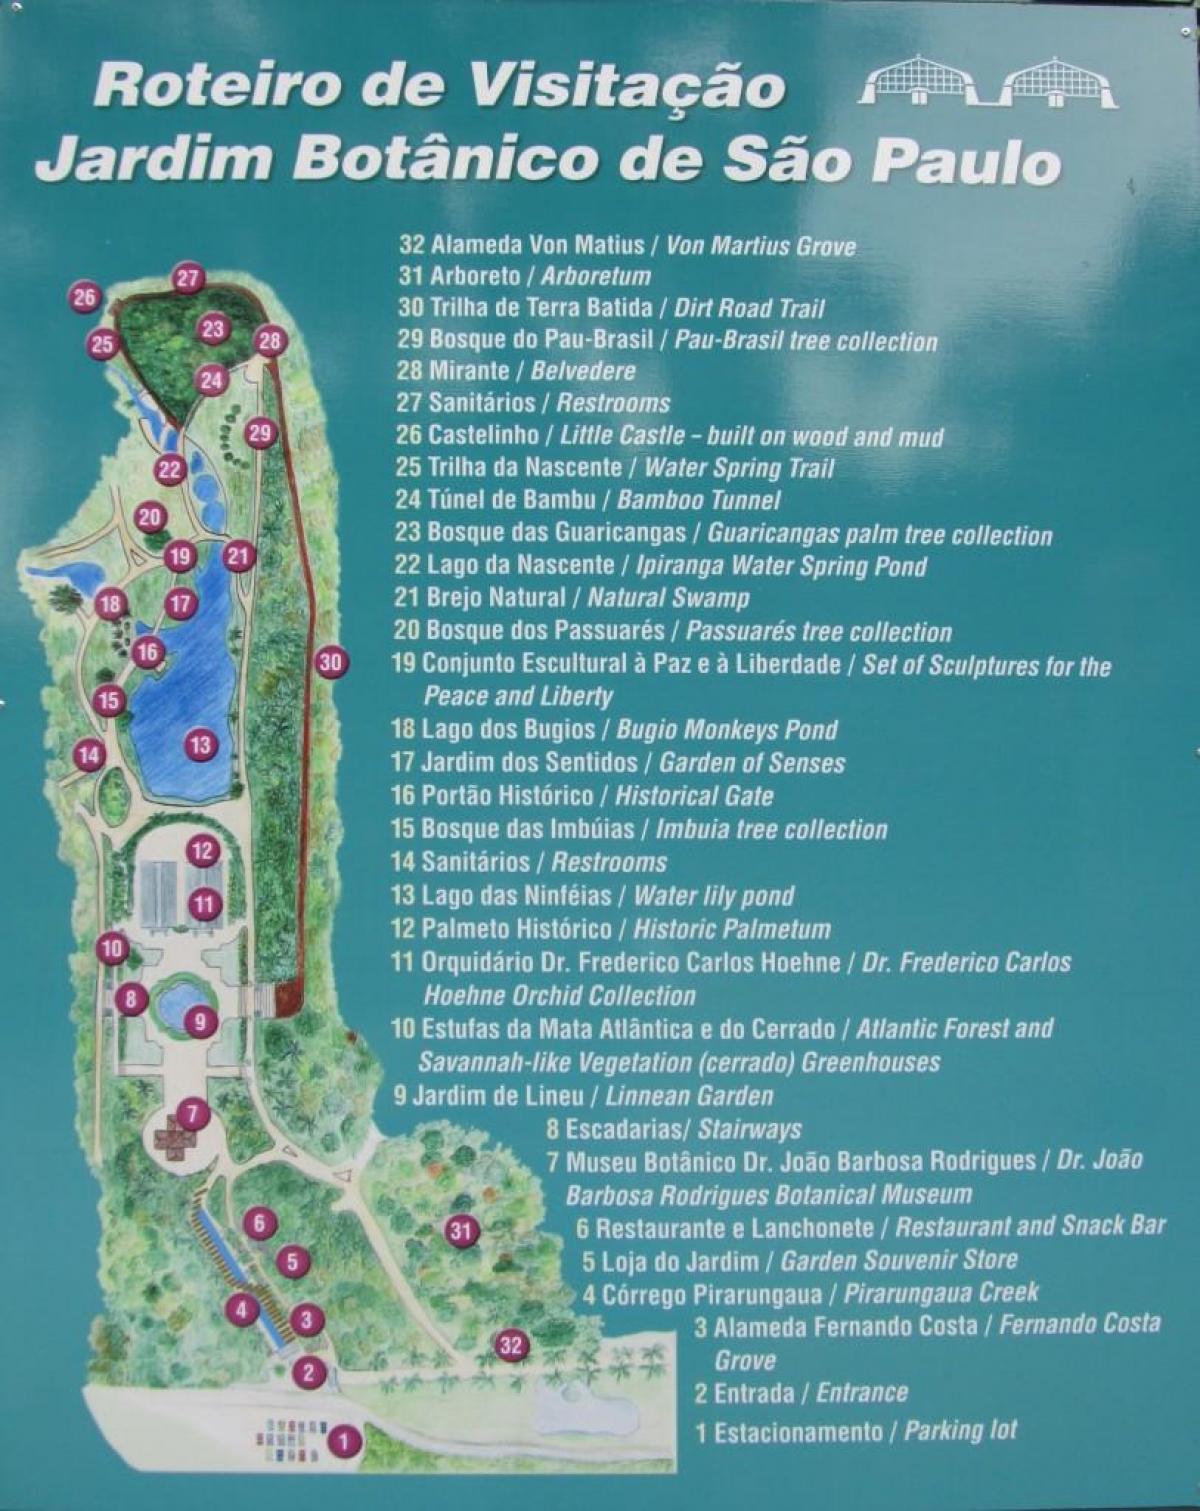 Map of botanical garden São Paulo